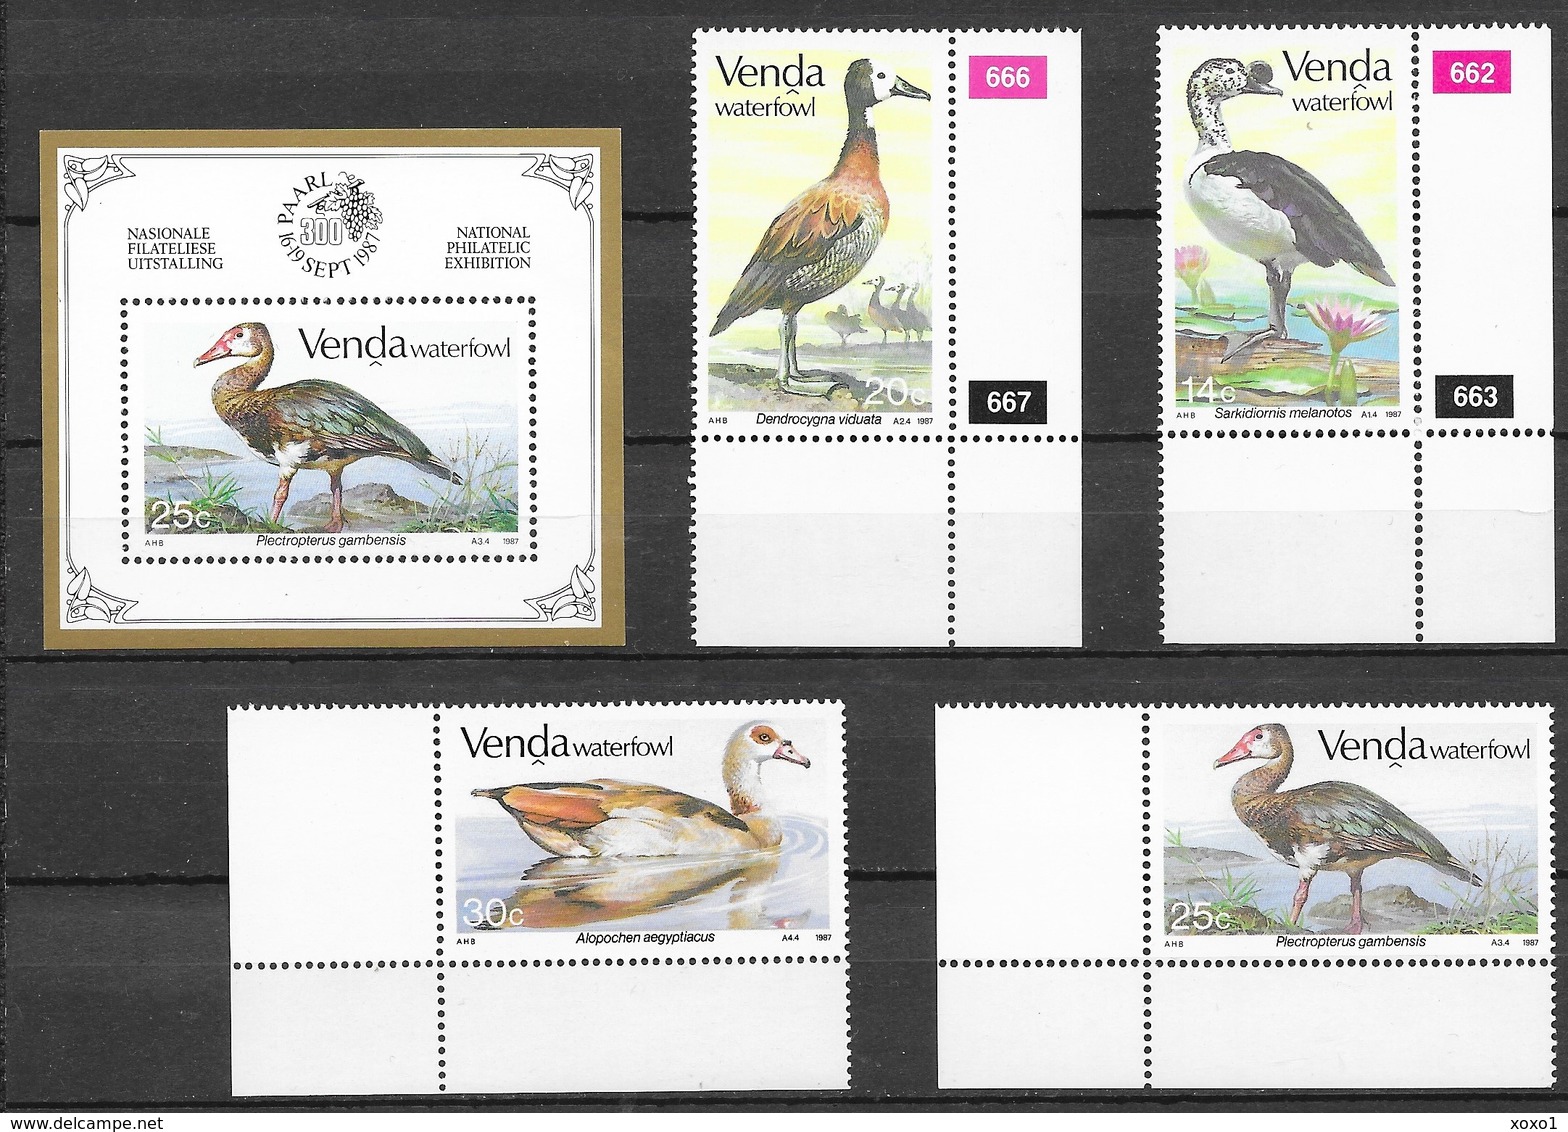 Venda South Africa 1987 MiNr. 150 - 153 (Block 3) Birds Geese 4v+1bl MNH**  15.50 € - Gänsevögel